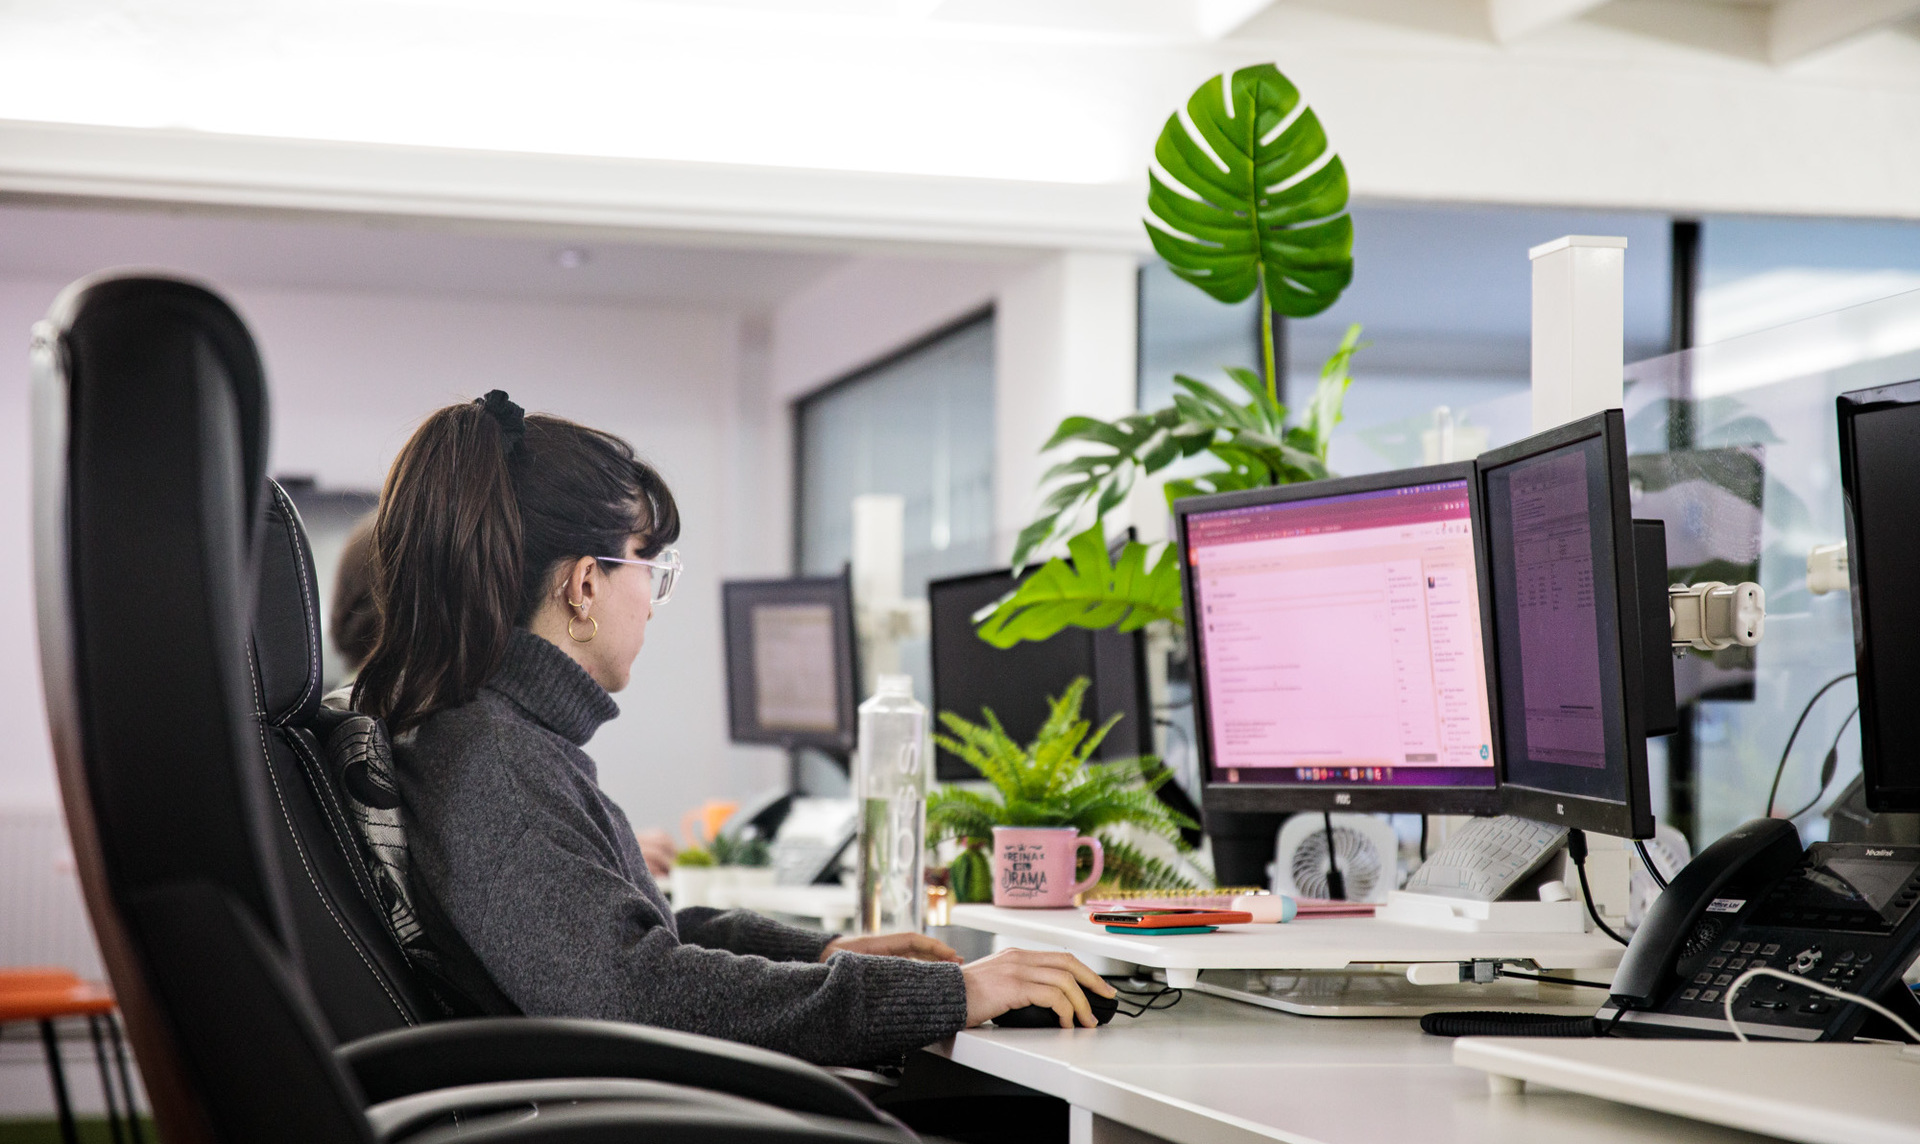 A web designer sat at her desk, working on her computer